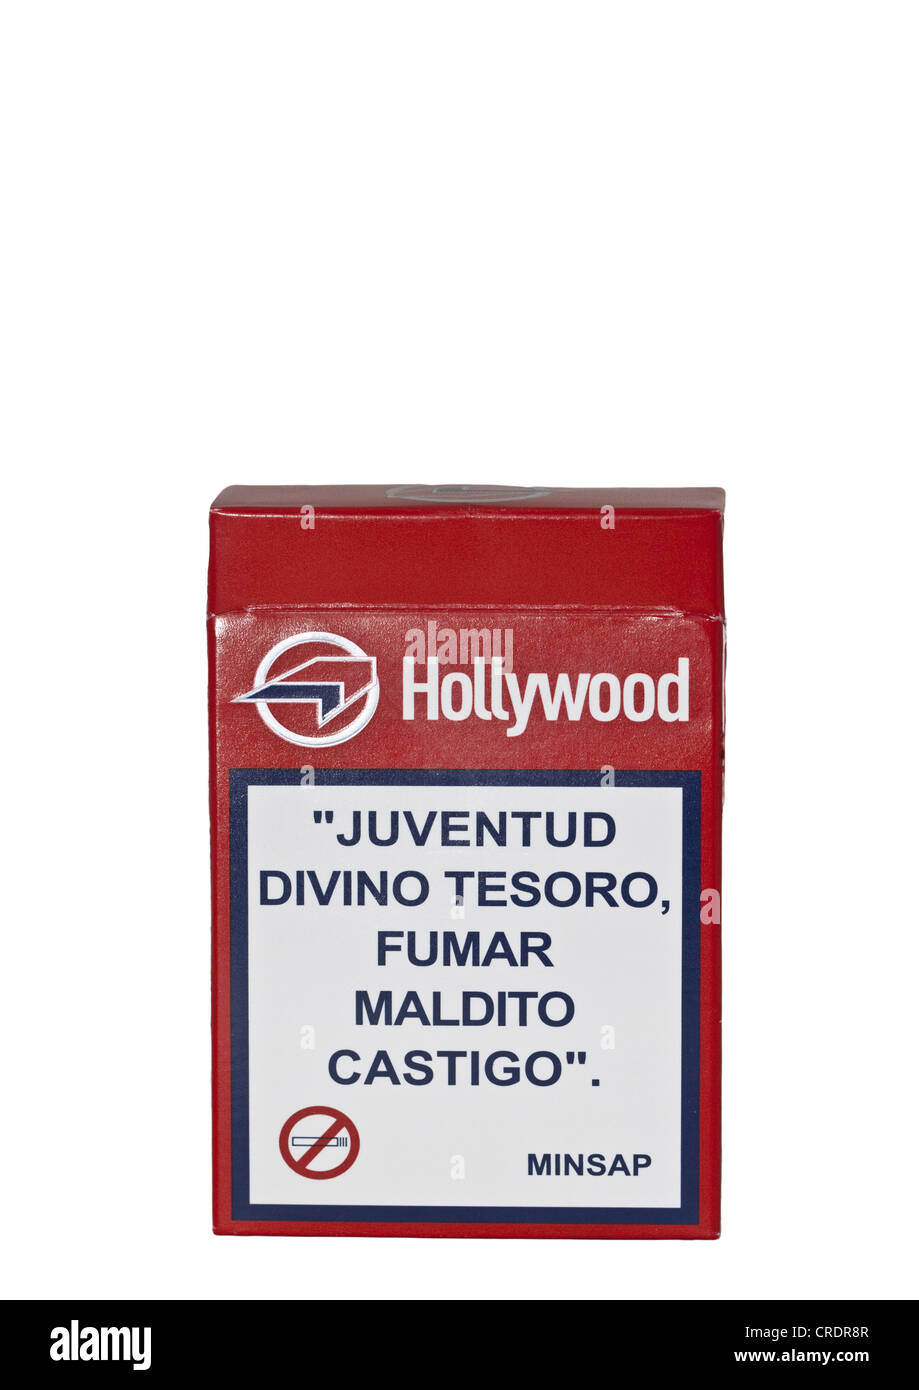 Kubanische Marke von Zigaretten, Hollywood, mit einer Gesundheitswarnung auf Spanisch Stockfoto